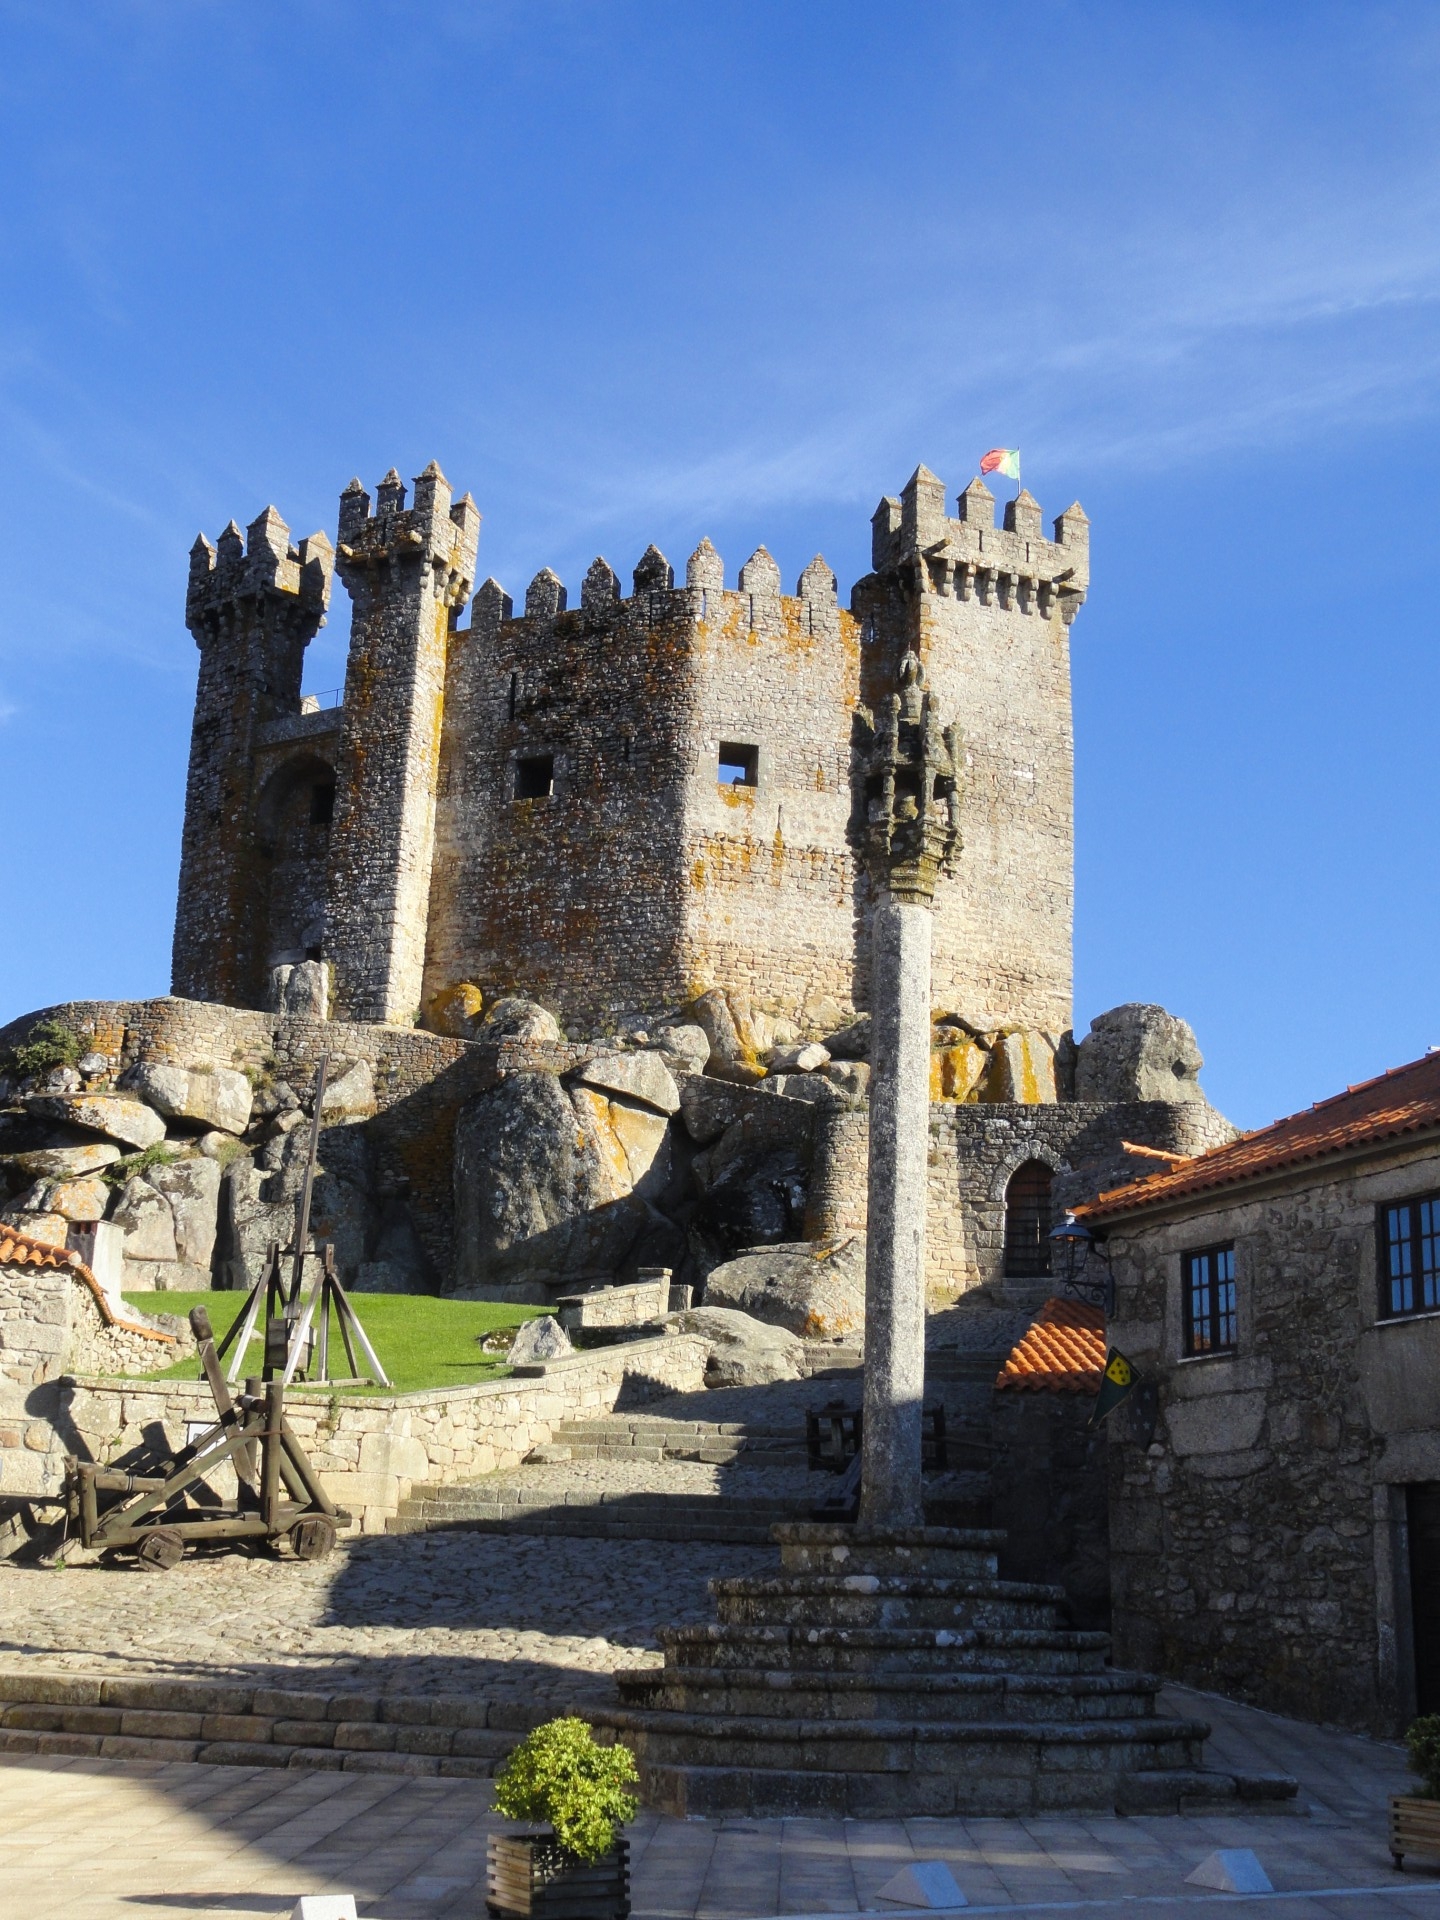 Chateau de Penedono